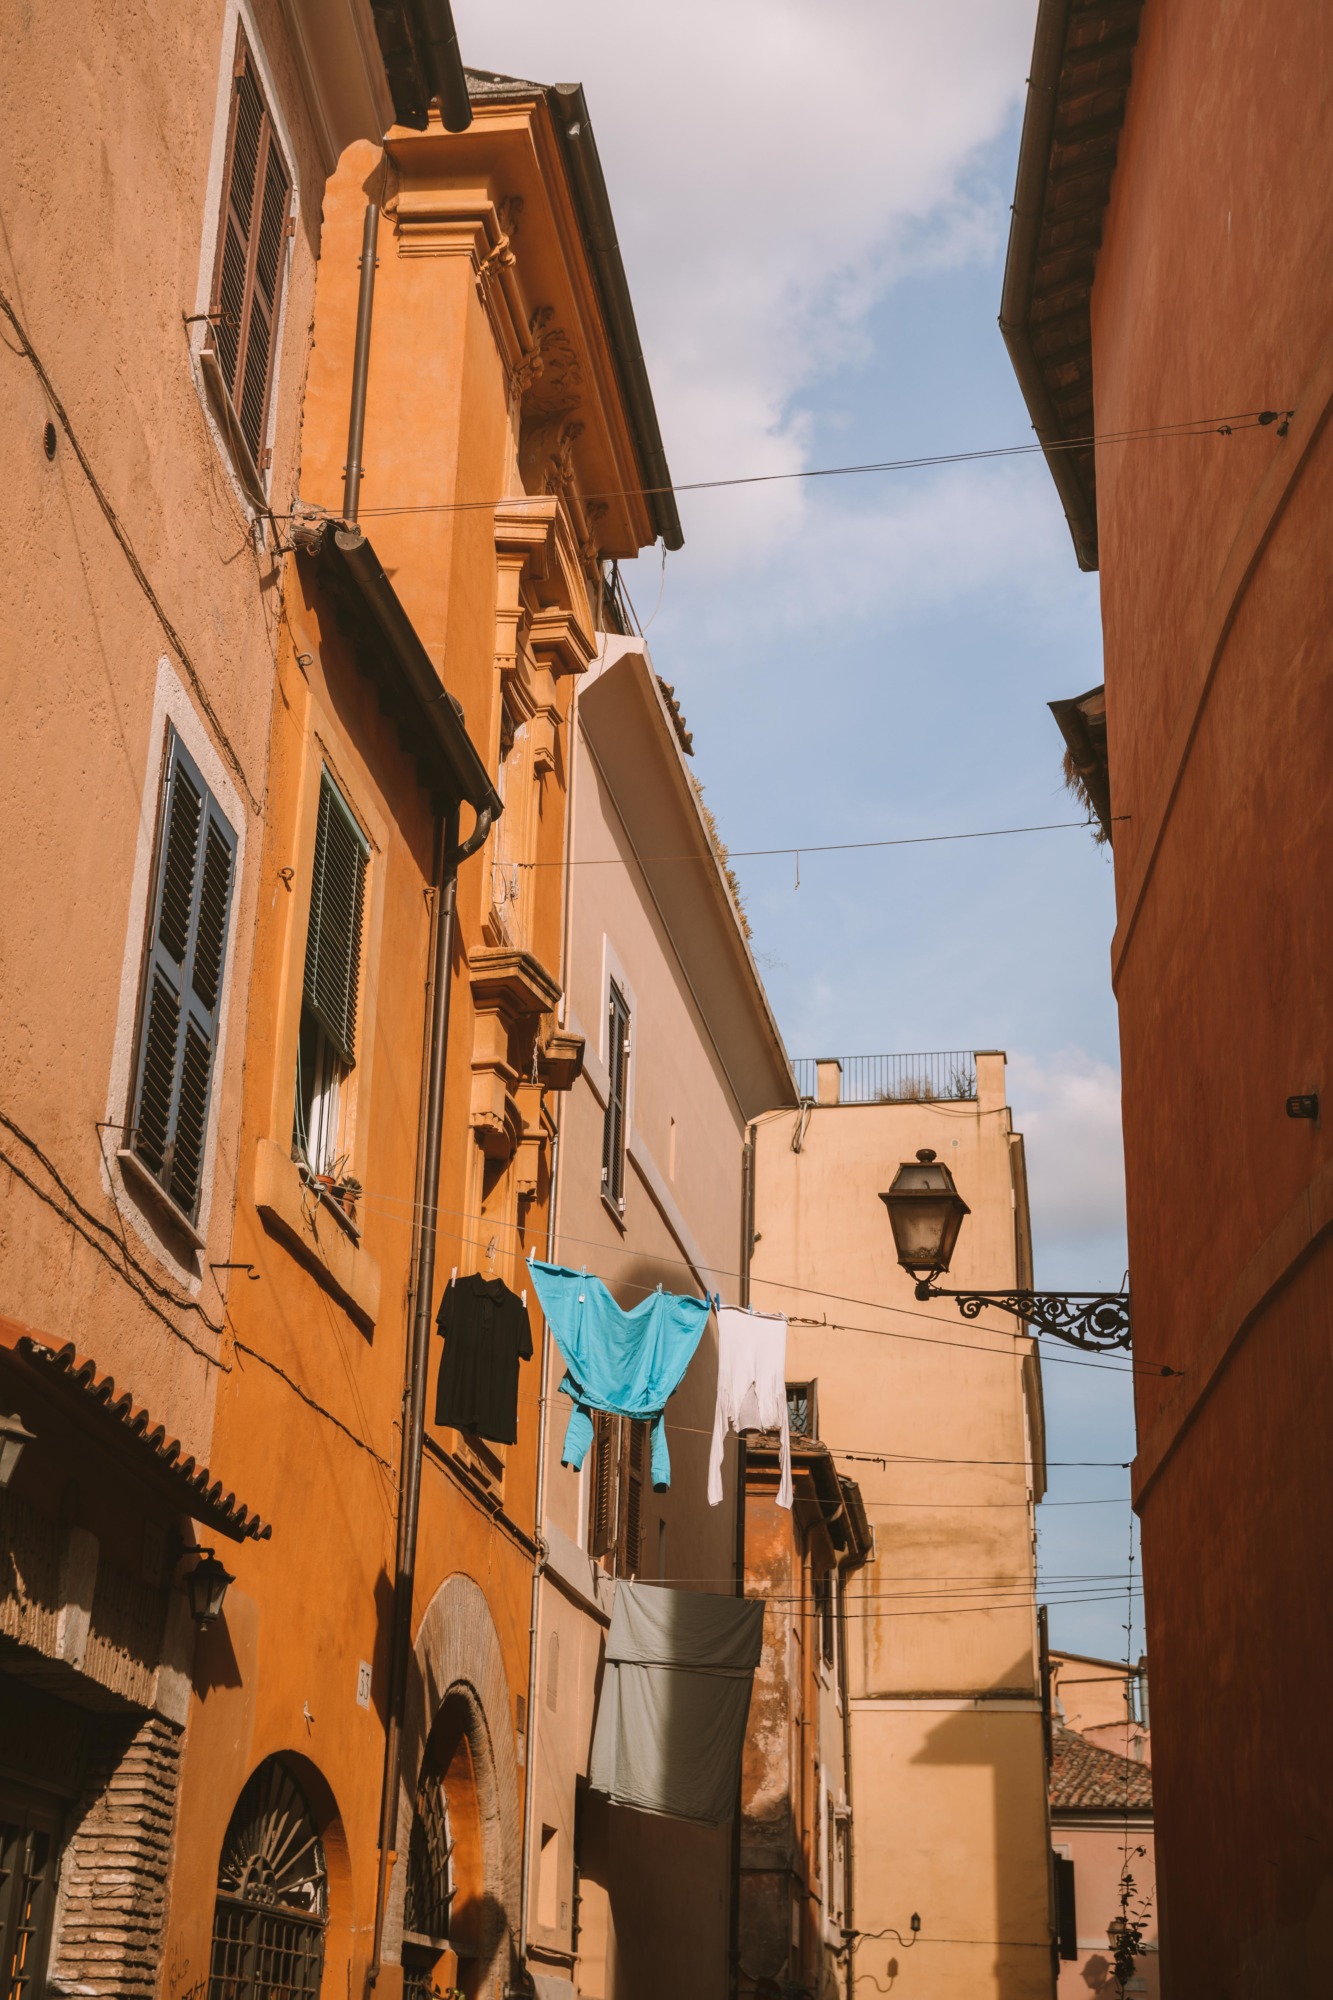 Visiter Trastevere Rome - Blondie Baby blog voyage